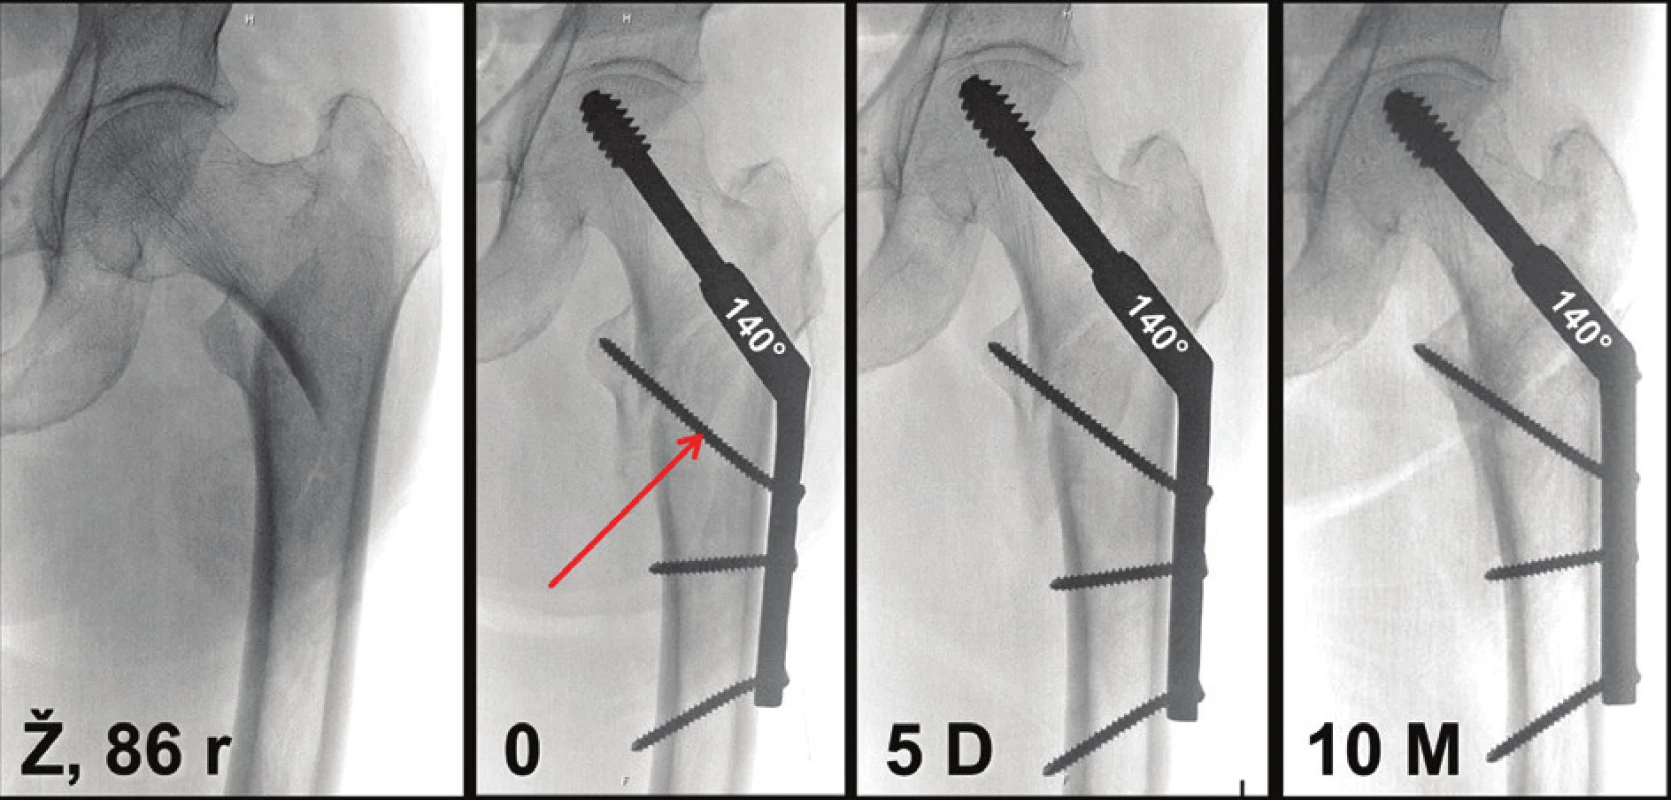 Nestabilní pertrochanterická zlomenina dokonale ošetřená DHS: a – nestabilní pertrochanterická zlomenina u 86leté pacientky; b – pooperační snímek, provedena valgózní repozice a osteosyntéza 140° DHS, úhel repozice odpovídá úhlu implantátu, skluzný šroub prochází středem proximálního úlomku, špička šroubu je těsně subchondrálně, proximální kortikální šroub prochází špičkou mediální kortikalis krčku femuru a brání tak jejímu sklouznutí do dřeňového kanálu; c – rtg snímek 5 dní po operaci, není patrná komprese úlomků; d – za 10 měsíců po operaci je zlomenina zhojena, komprese úlomků je minimální, jak je patrné na vztahu obou mediálních kortikalis. 
Fig. 19: Unstable pertrochanteric fracture flawlessly treated with DHS: a – an unstable pertrochanteric fracture in a 86-year old female patient; b – postoperative radiograph; valgus reduction and internal fixation with a 140° DHS, the reduction angle corresponds to the implant angle, the lag screw passes through the centre of the proximal fragment, the screw tip is close to the subchondral bone, the tip of the proximal cortical screw passes through the medial cortex of the femoral neck and prevents thus its subsidence in the medullary canal; c – radiograph 5 days postoperatively with absence of compression of fragments; d –10 months postoperatively the fracture is healed, compression of fragments is minimal as shown by the relation of both medial cortices. 